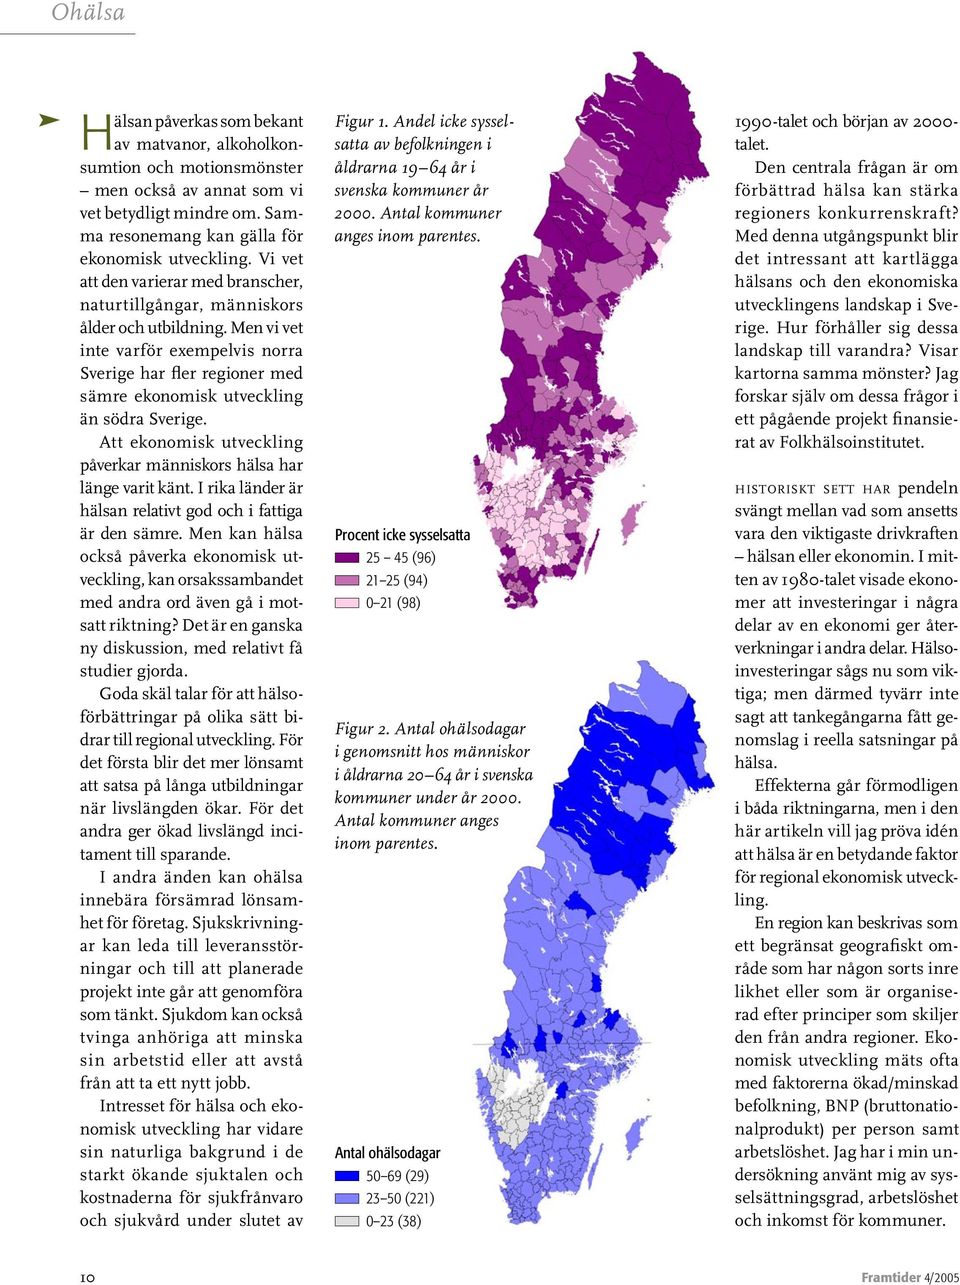 Men vi vet inte varför exempelvis norra Sverige har fler regioner med sämre ekonomisk utveckling än södra Sverige. Att ekonomisk utveckling påverkar människors hälsa har länge varit känt.